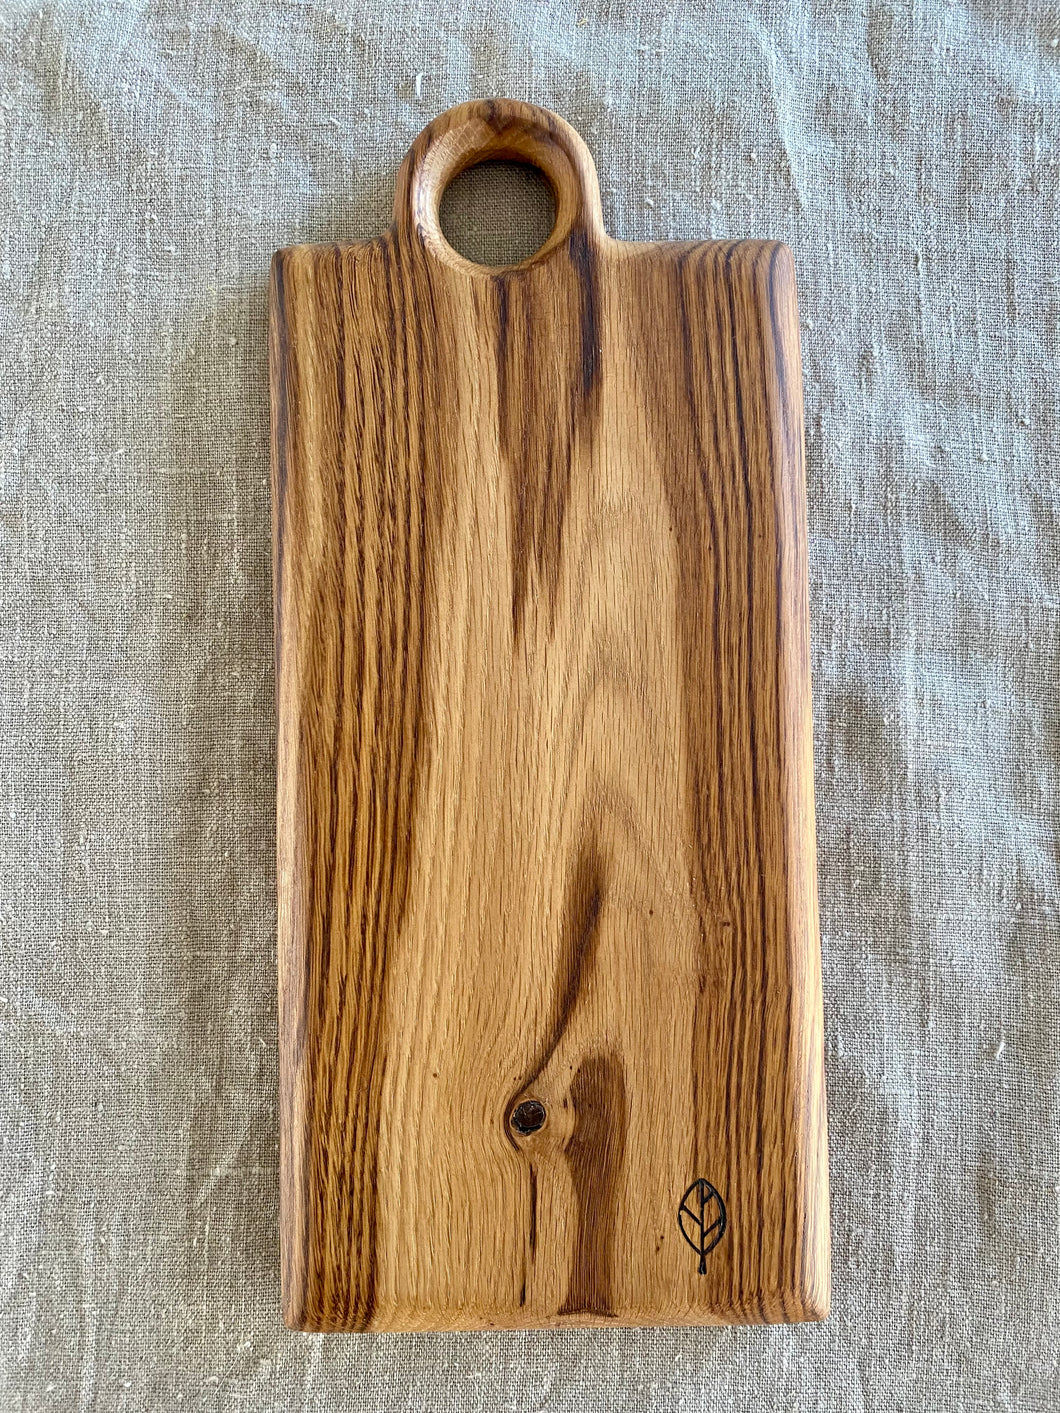 Planche à découper / de présentation en bois du chêne